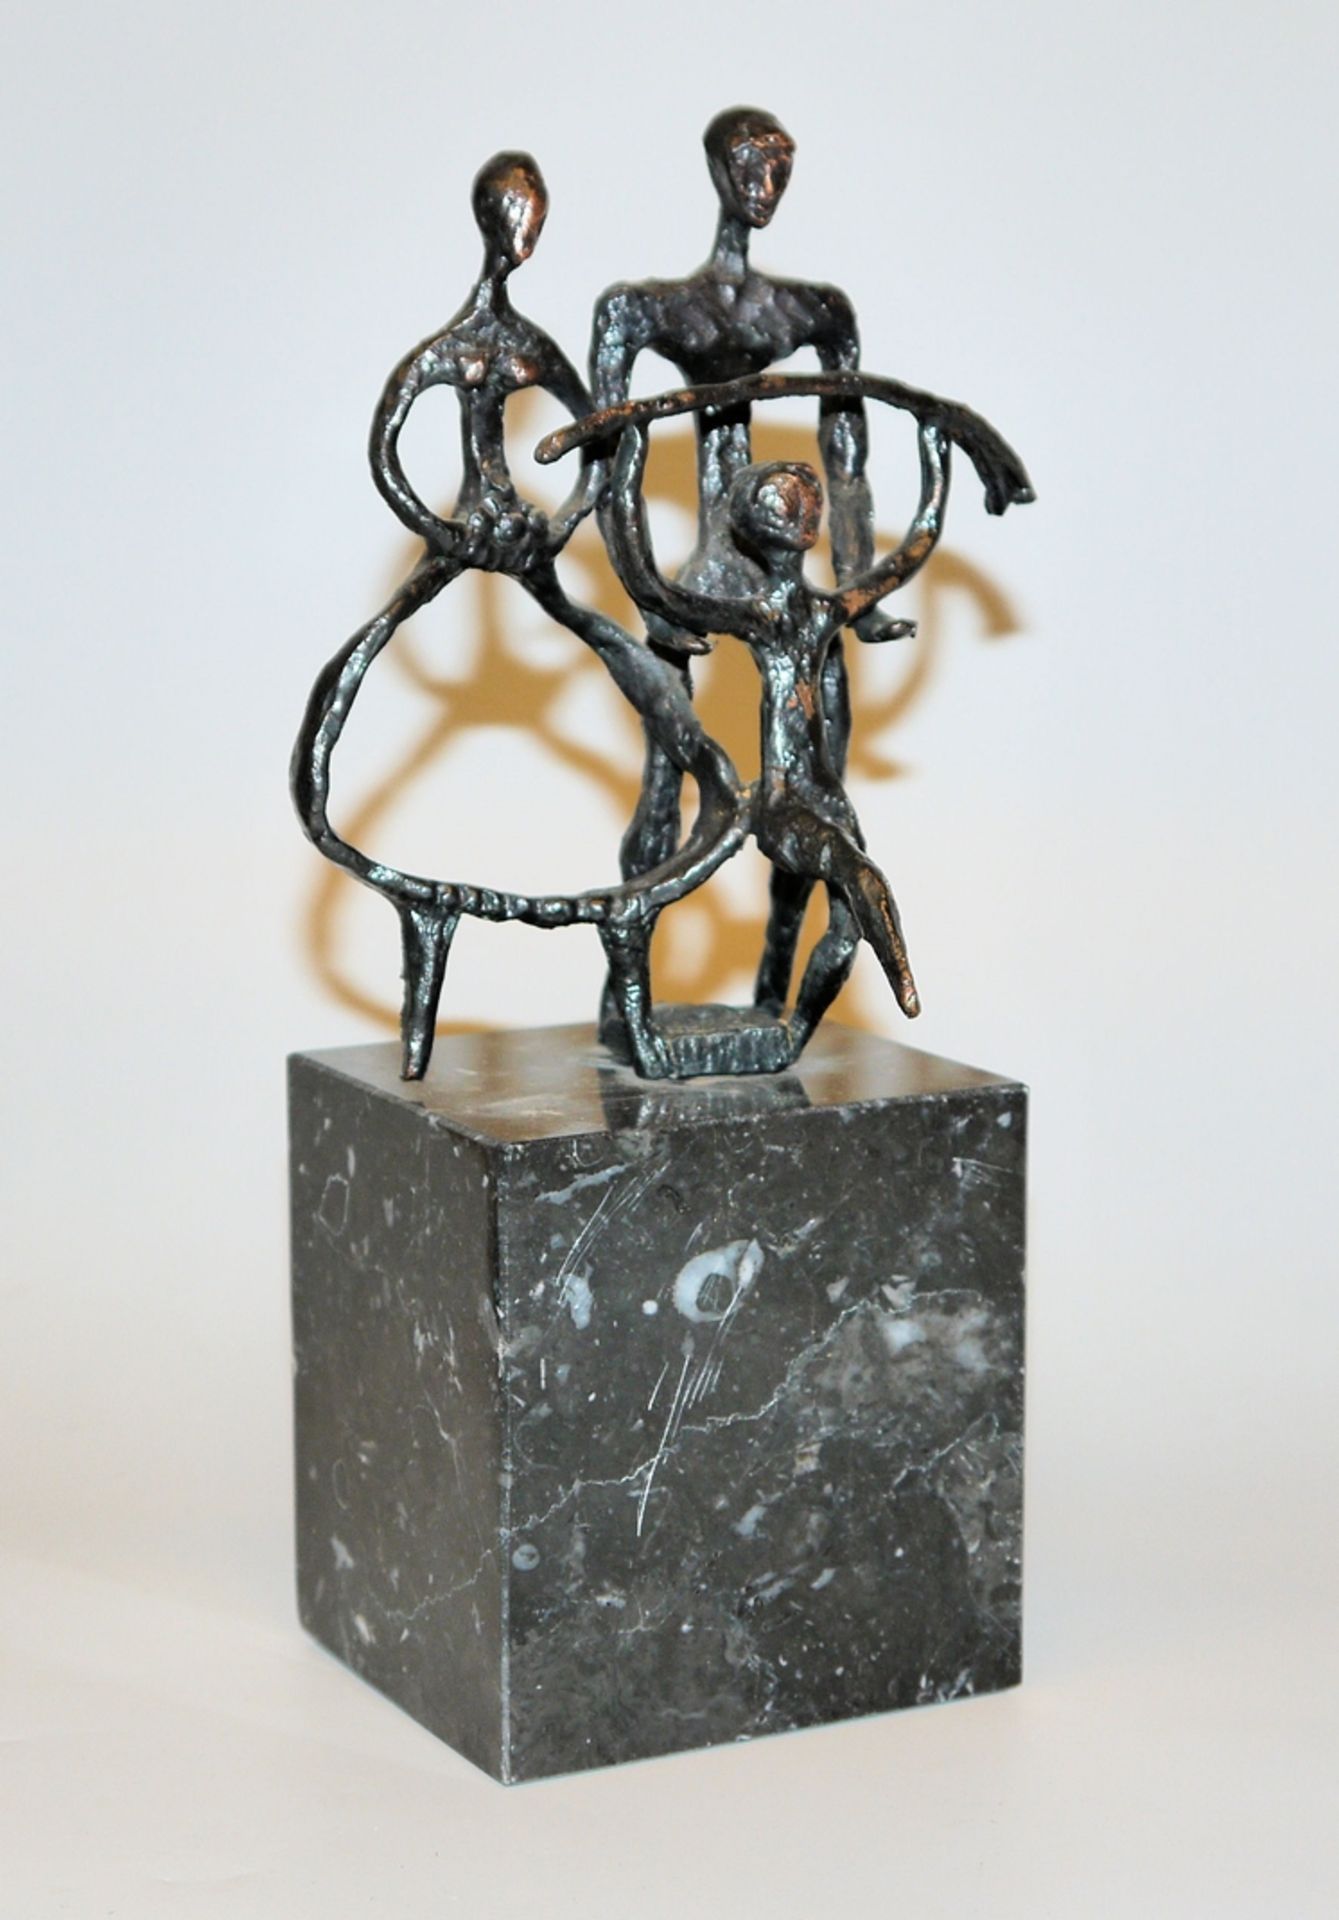 José Carrilero Gil, "L`ágriculture, L`ágriculteur et le progrès", bronze sculpture